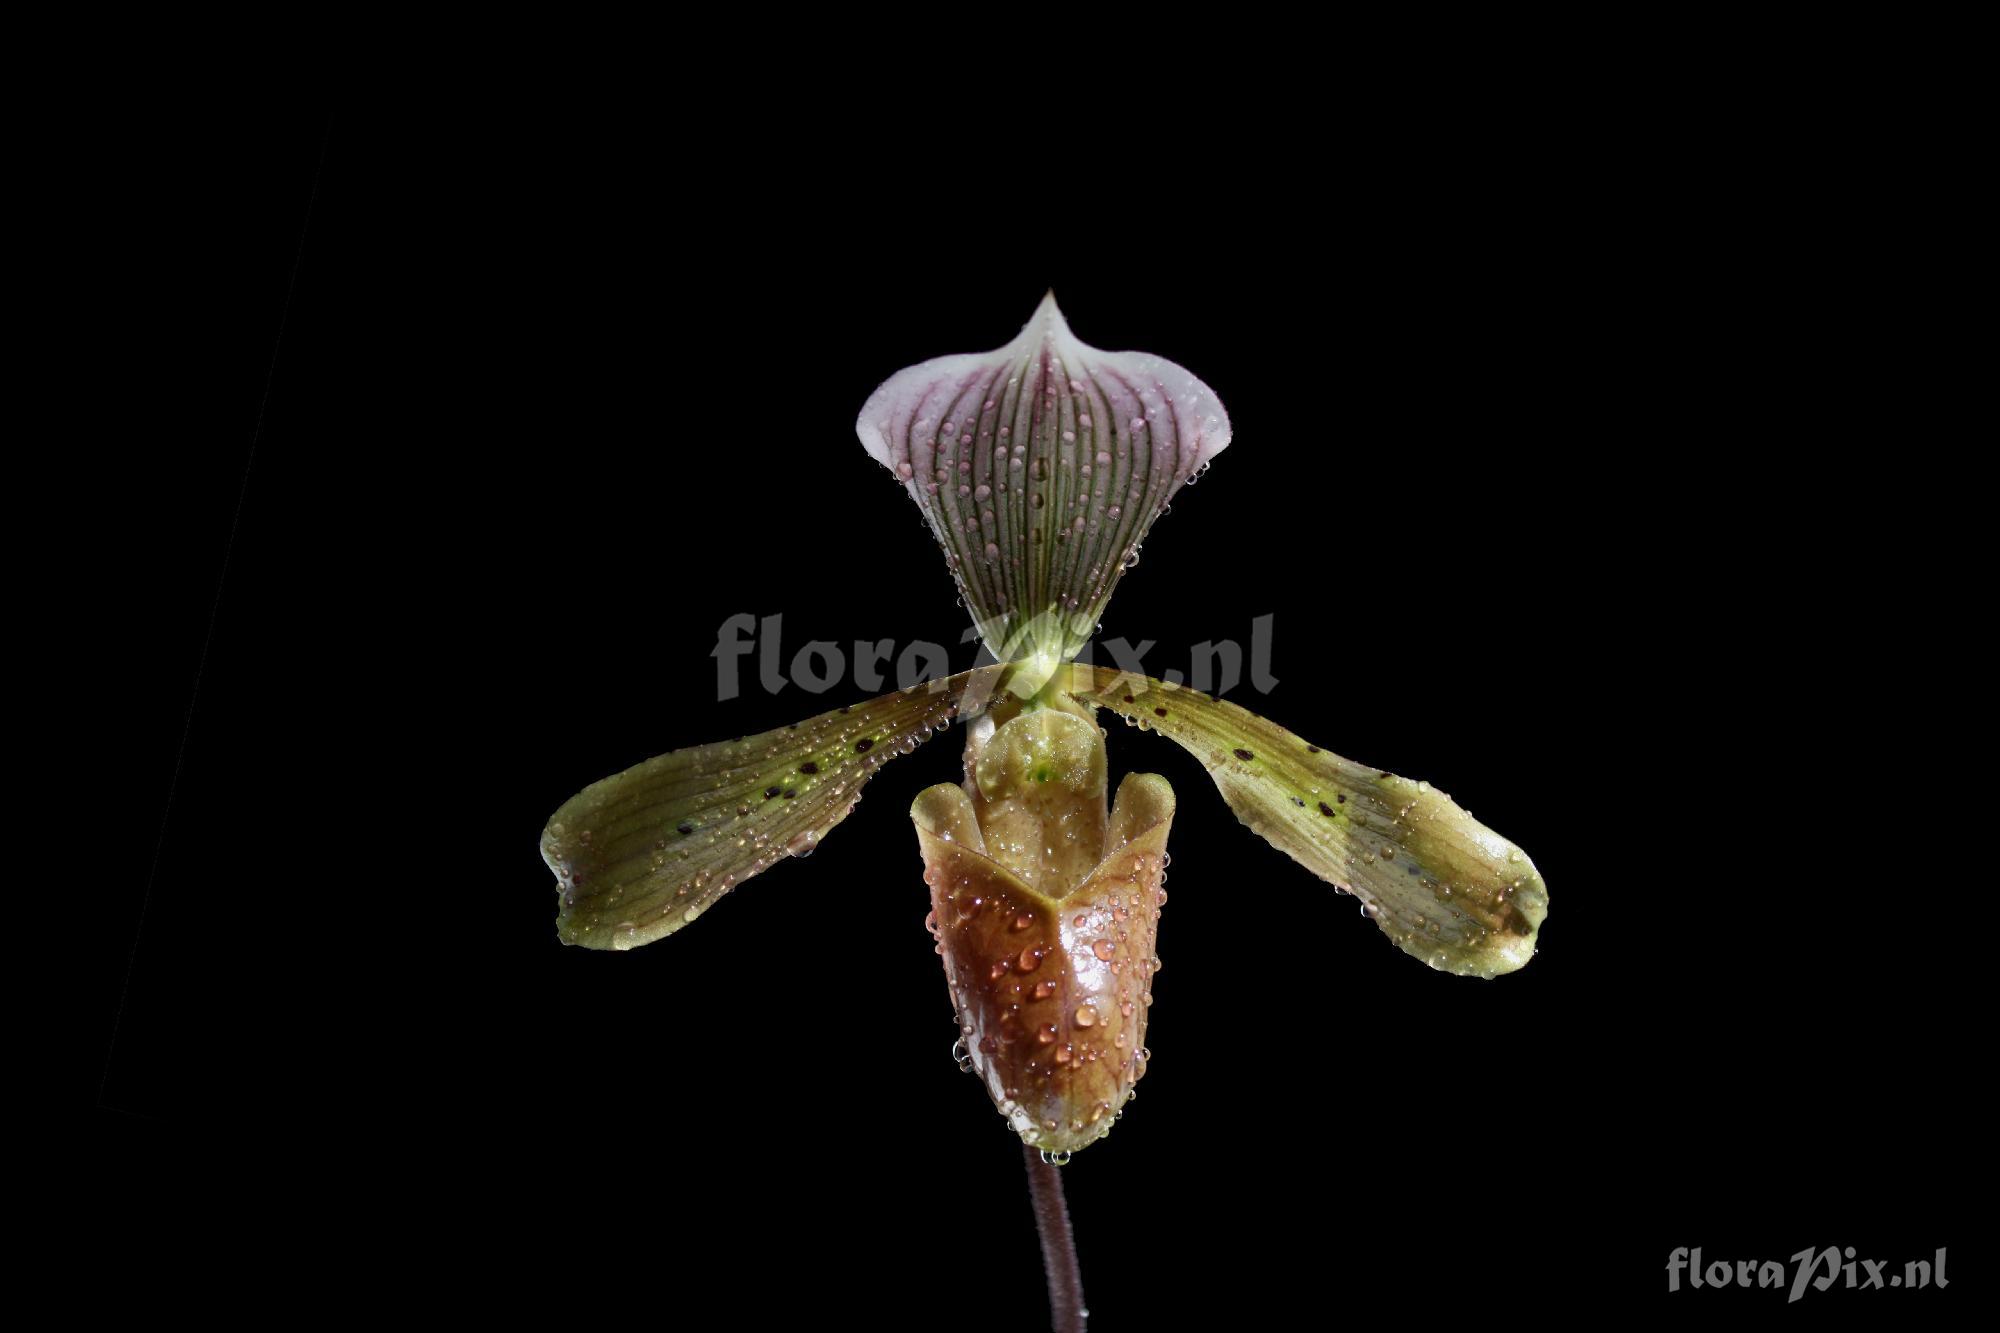 Paphiopedilum tonsum (Rchb. f.) Pfitzer 1895